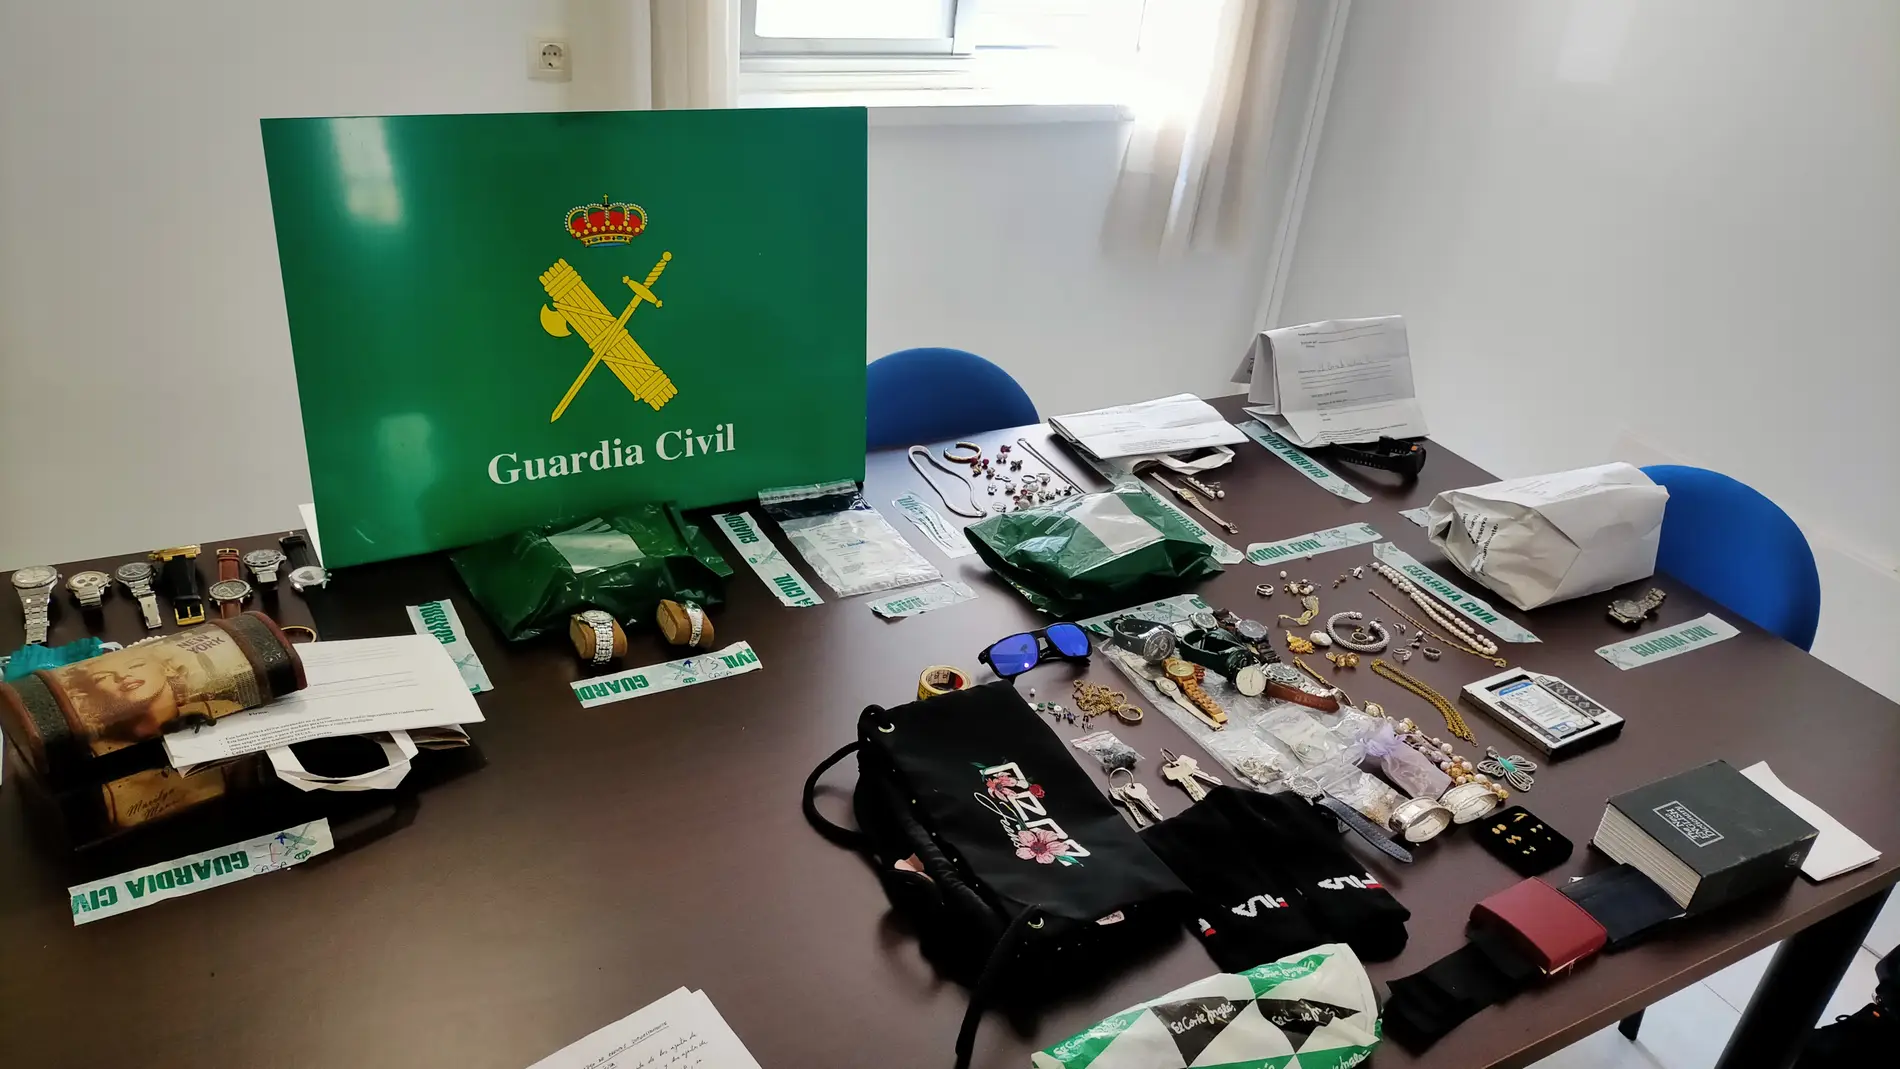 La Guardia Civil desarticula un grupo criminal dedicado al tráfico de drogas